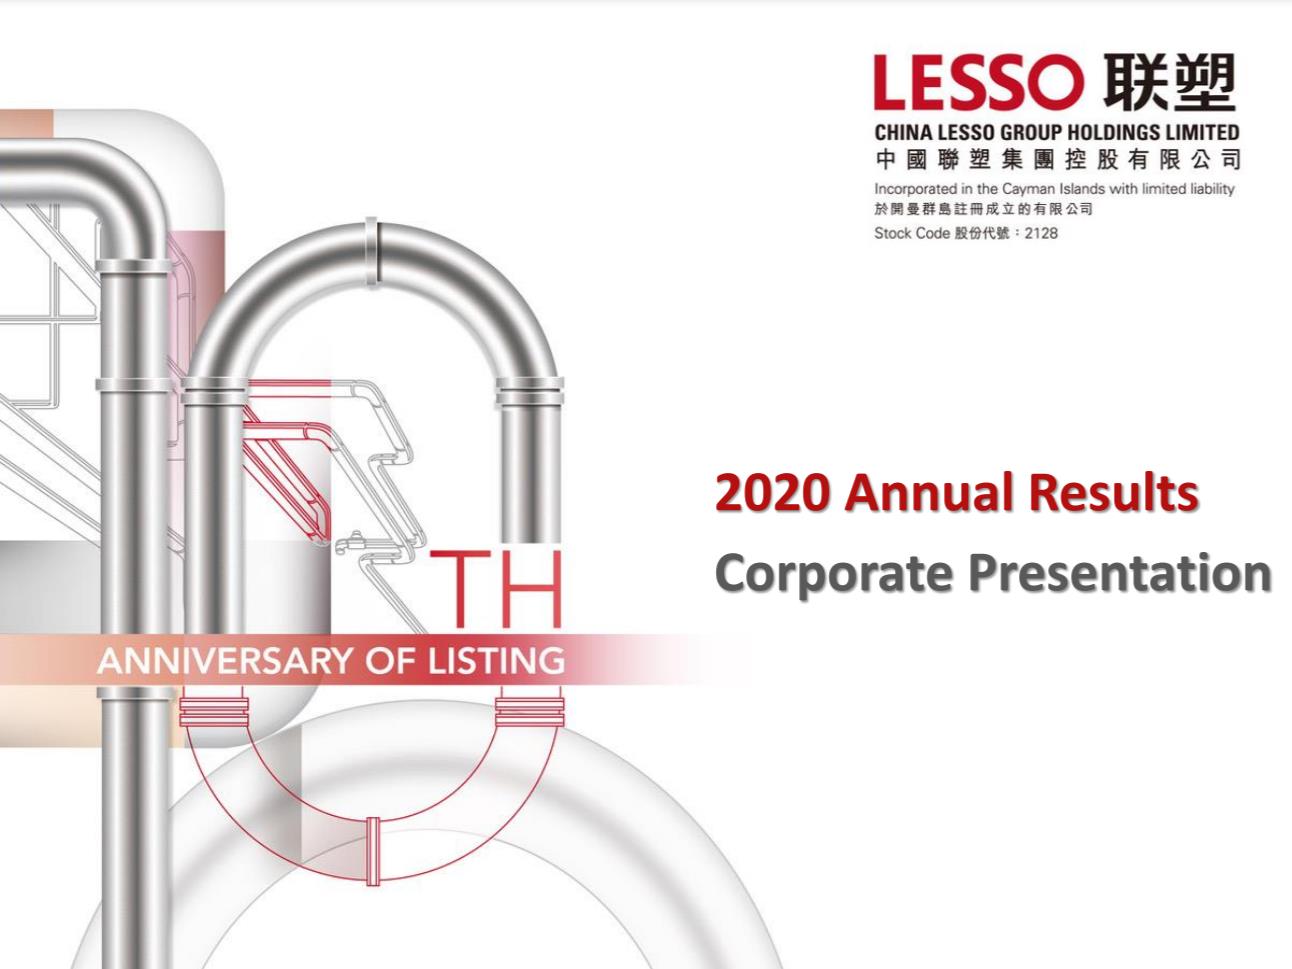 2020 Annual Results Corporate Presentation